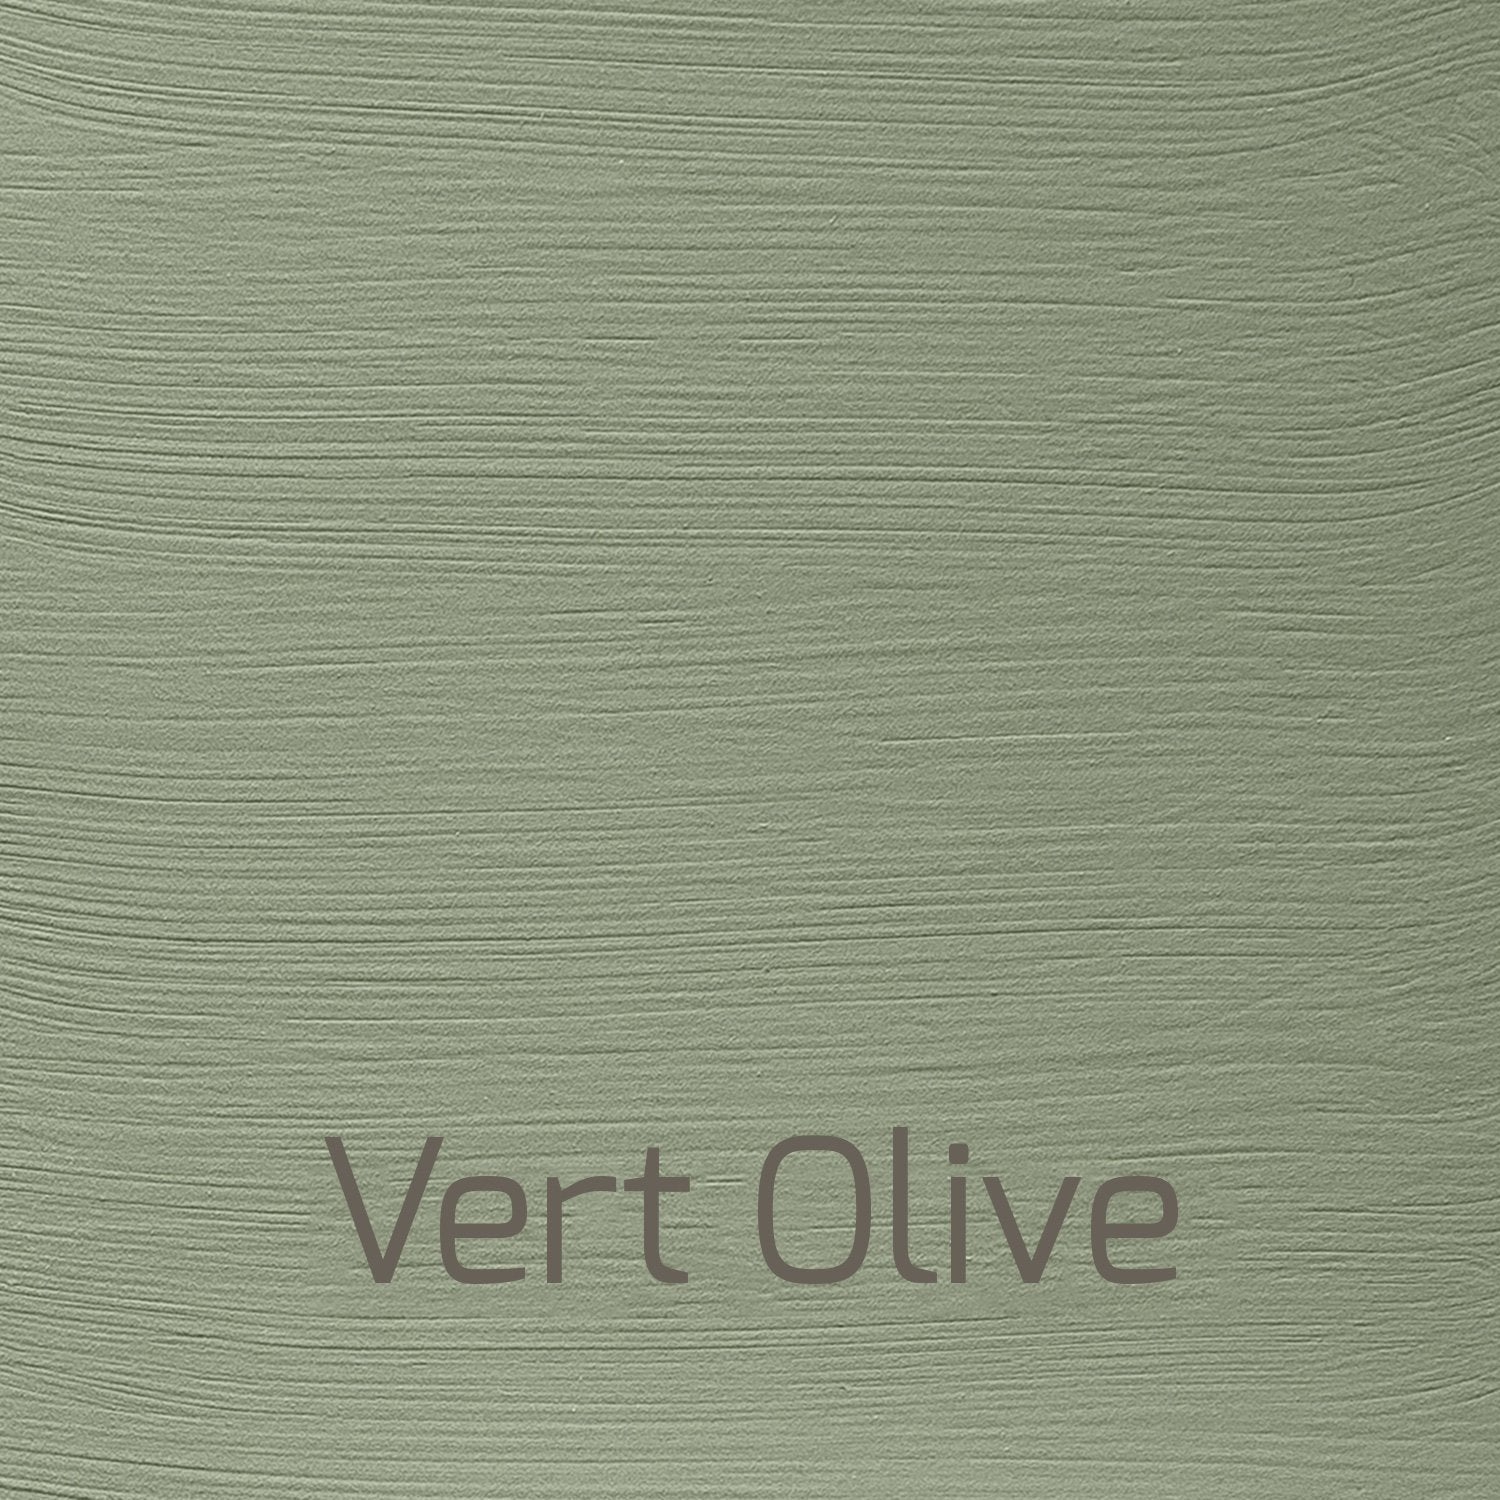 Vert Olive - Vintage-Vintage-Autentico Paint Online